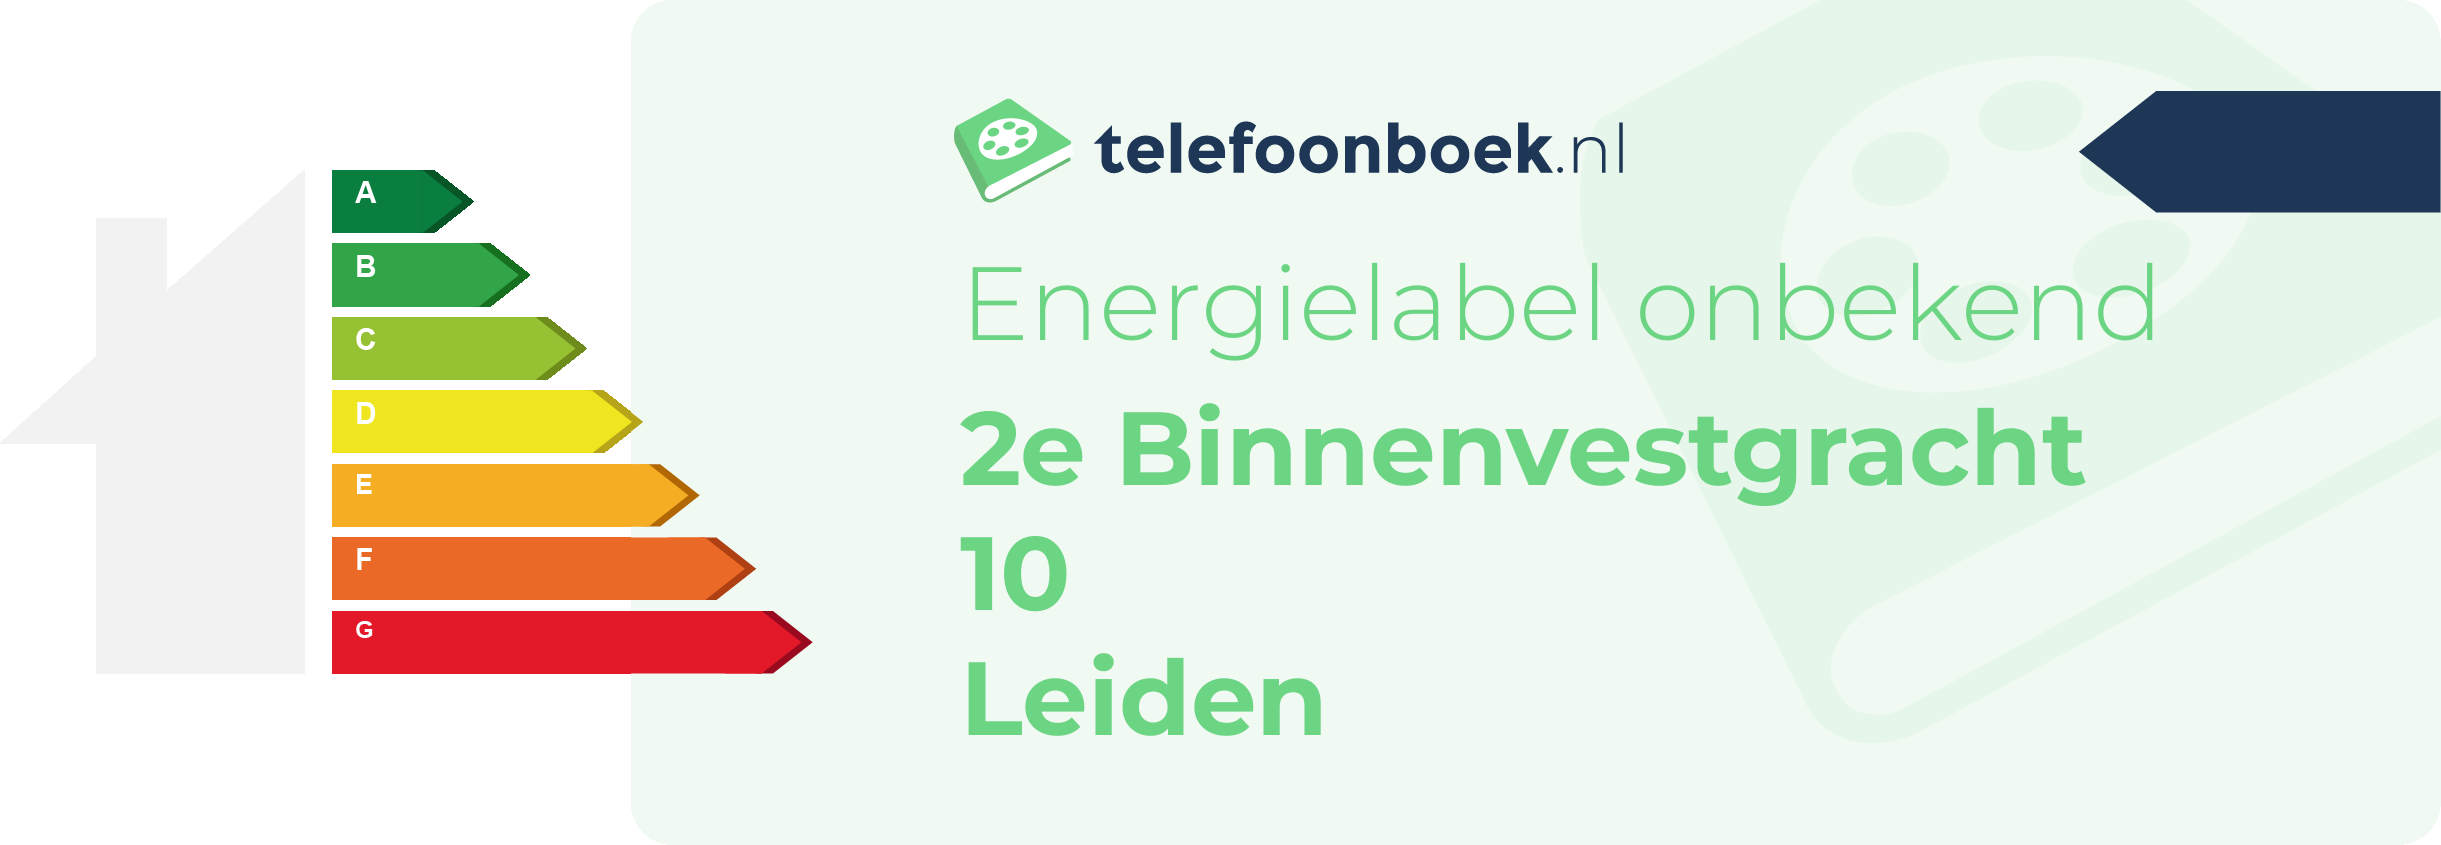 Energielabel 2e Binnenvestgracht 10 Leiden